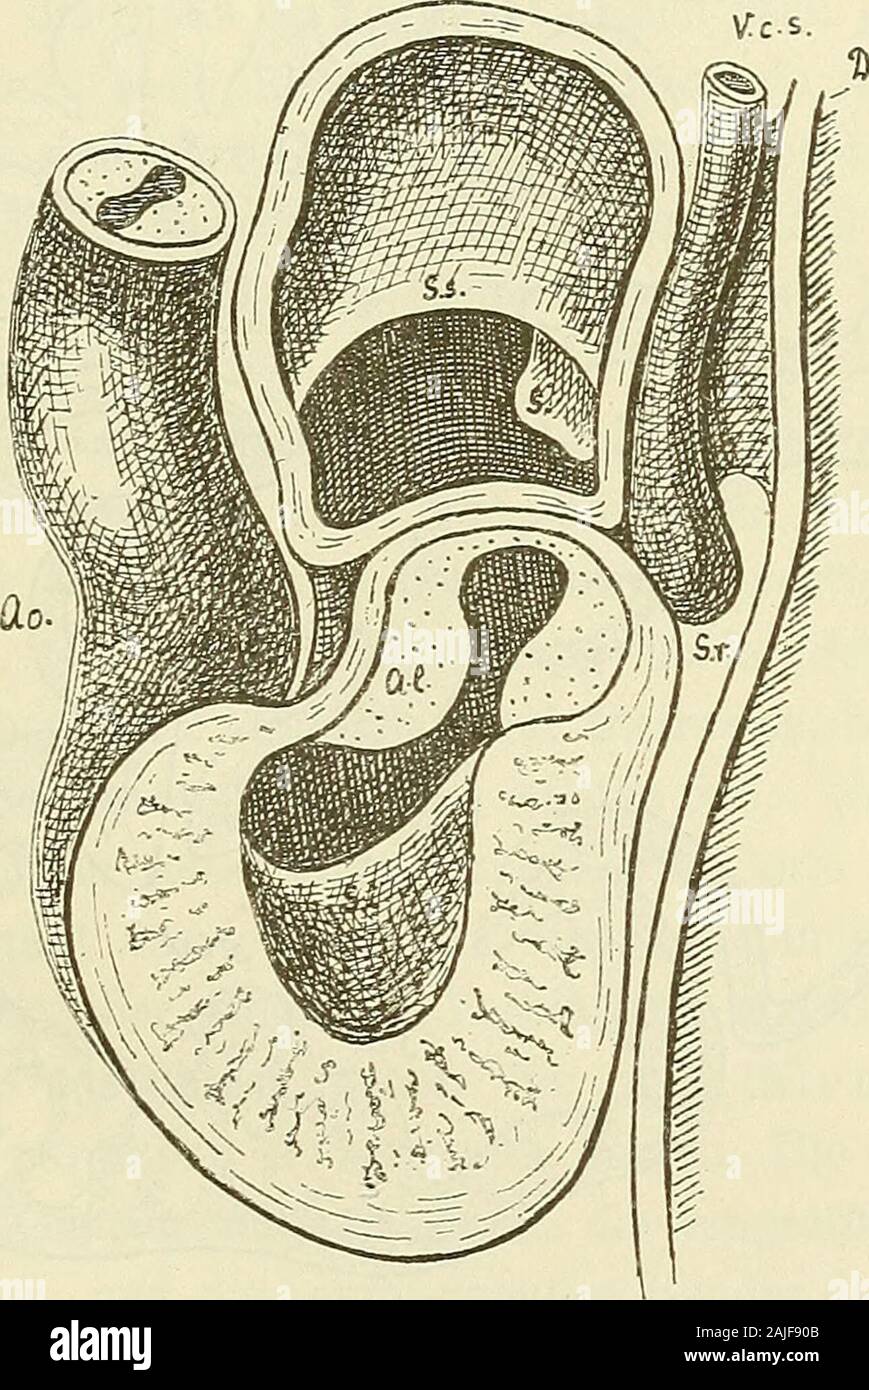 Anatomie menschlicher Embryonen . Diaphragma. cylindrisches Eohr, die Lichtung seiner Blutbahn dagegen stellt eineQuerspalte dar, die in der Mitte eng, an den beiden Kanten aus-geweitet ist. Der Zwischenraum zwischen dem Endothel- und demMuskelrohr wird durch eine weiche Bindesubstanz ausgefüllt, undso entstehen zwei breite und zwei schmale, die Lichtung umgebendeSubstanzleisten, die Atrioventricularlippen von Lindes oder Der Ohrkanal und die Bildung der Ostia yenosa. 153 Endothelkissen von F. Schmidt. Durch das Verhalten der Herz-ohren zum Ohrkanal wird übrigens bedingt, dass der Eand desletz Stock Photo